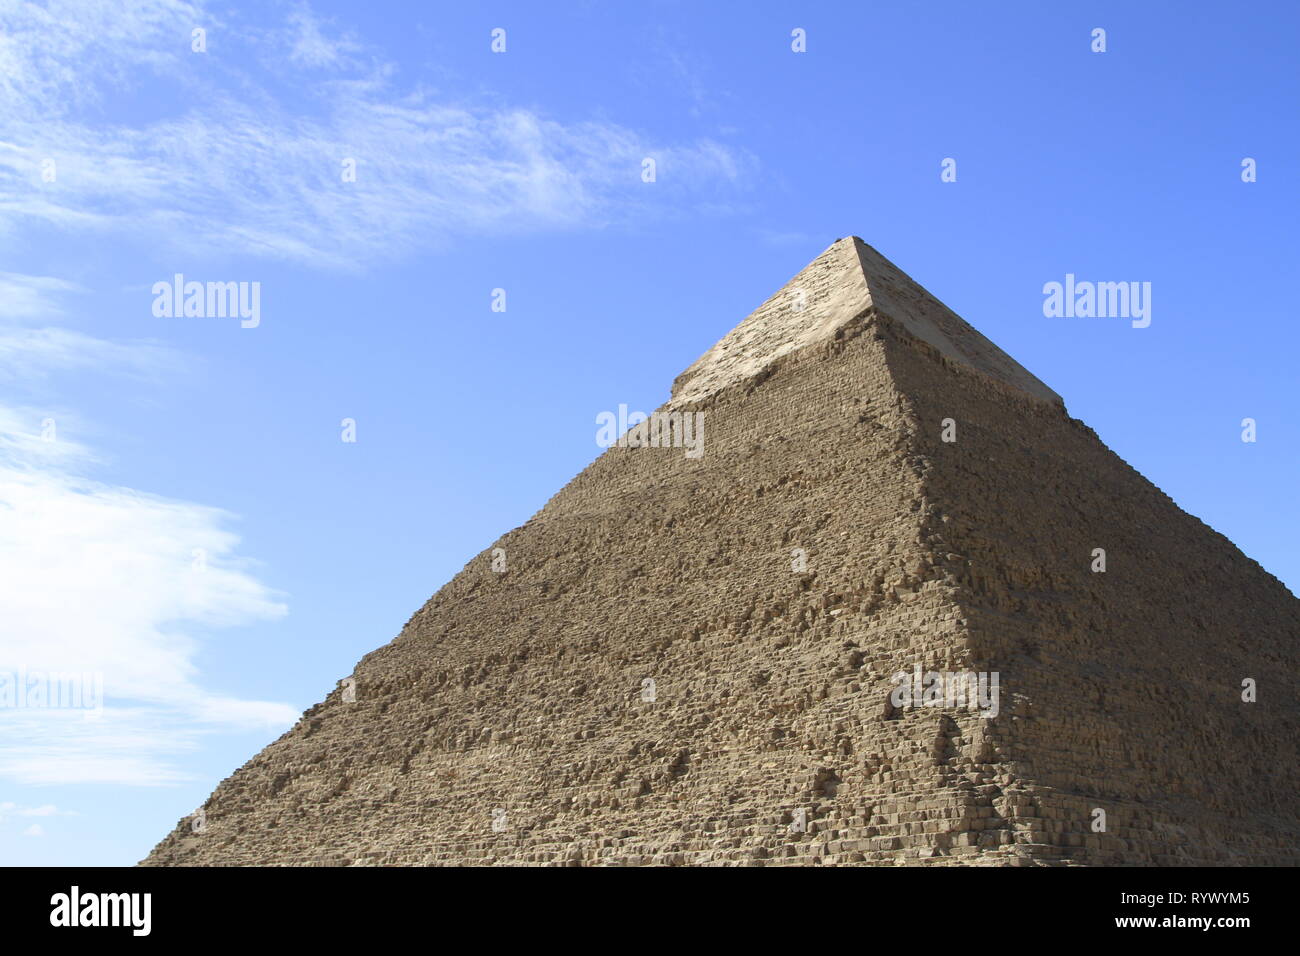 Pyramide de Khafré profile et le corps des pierres couvrant le tiers supérieur, complexe Pyramide de Gizeh, Le Caire, Egypte Banque D'Images